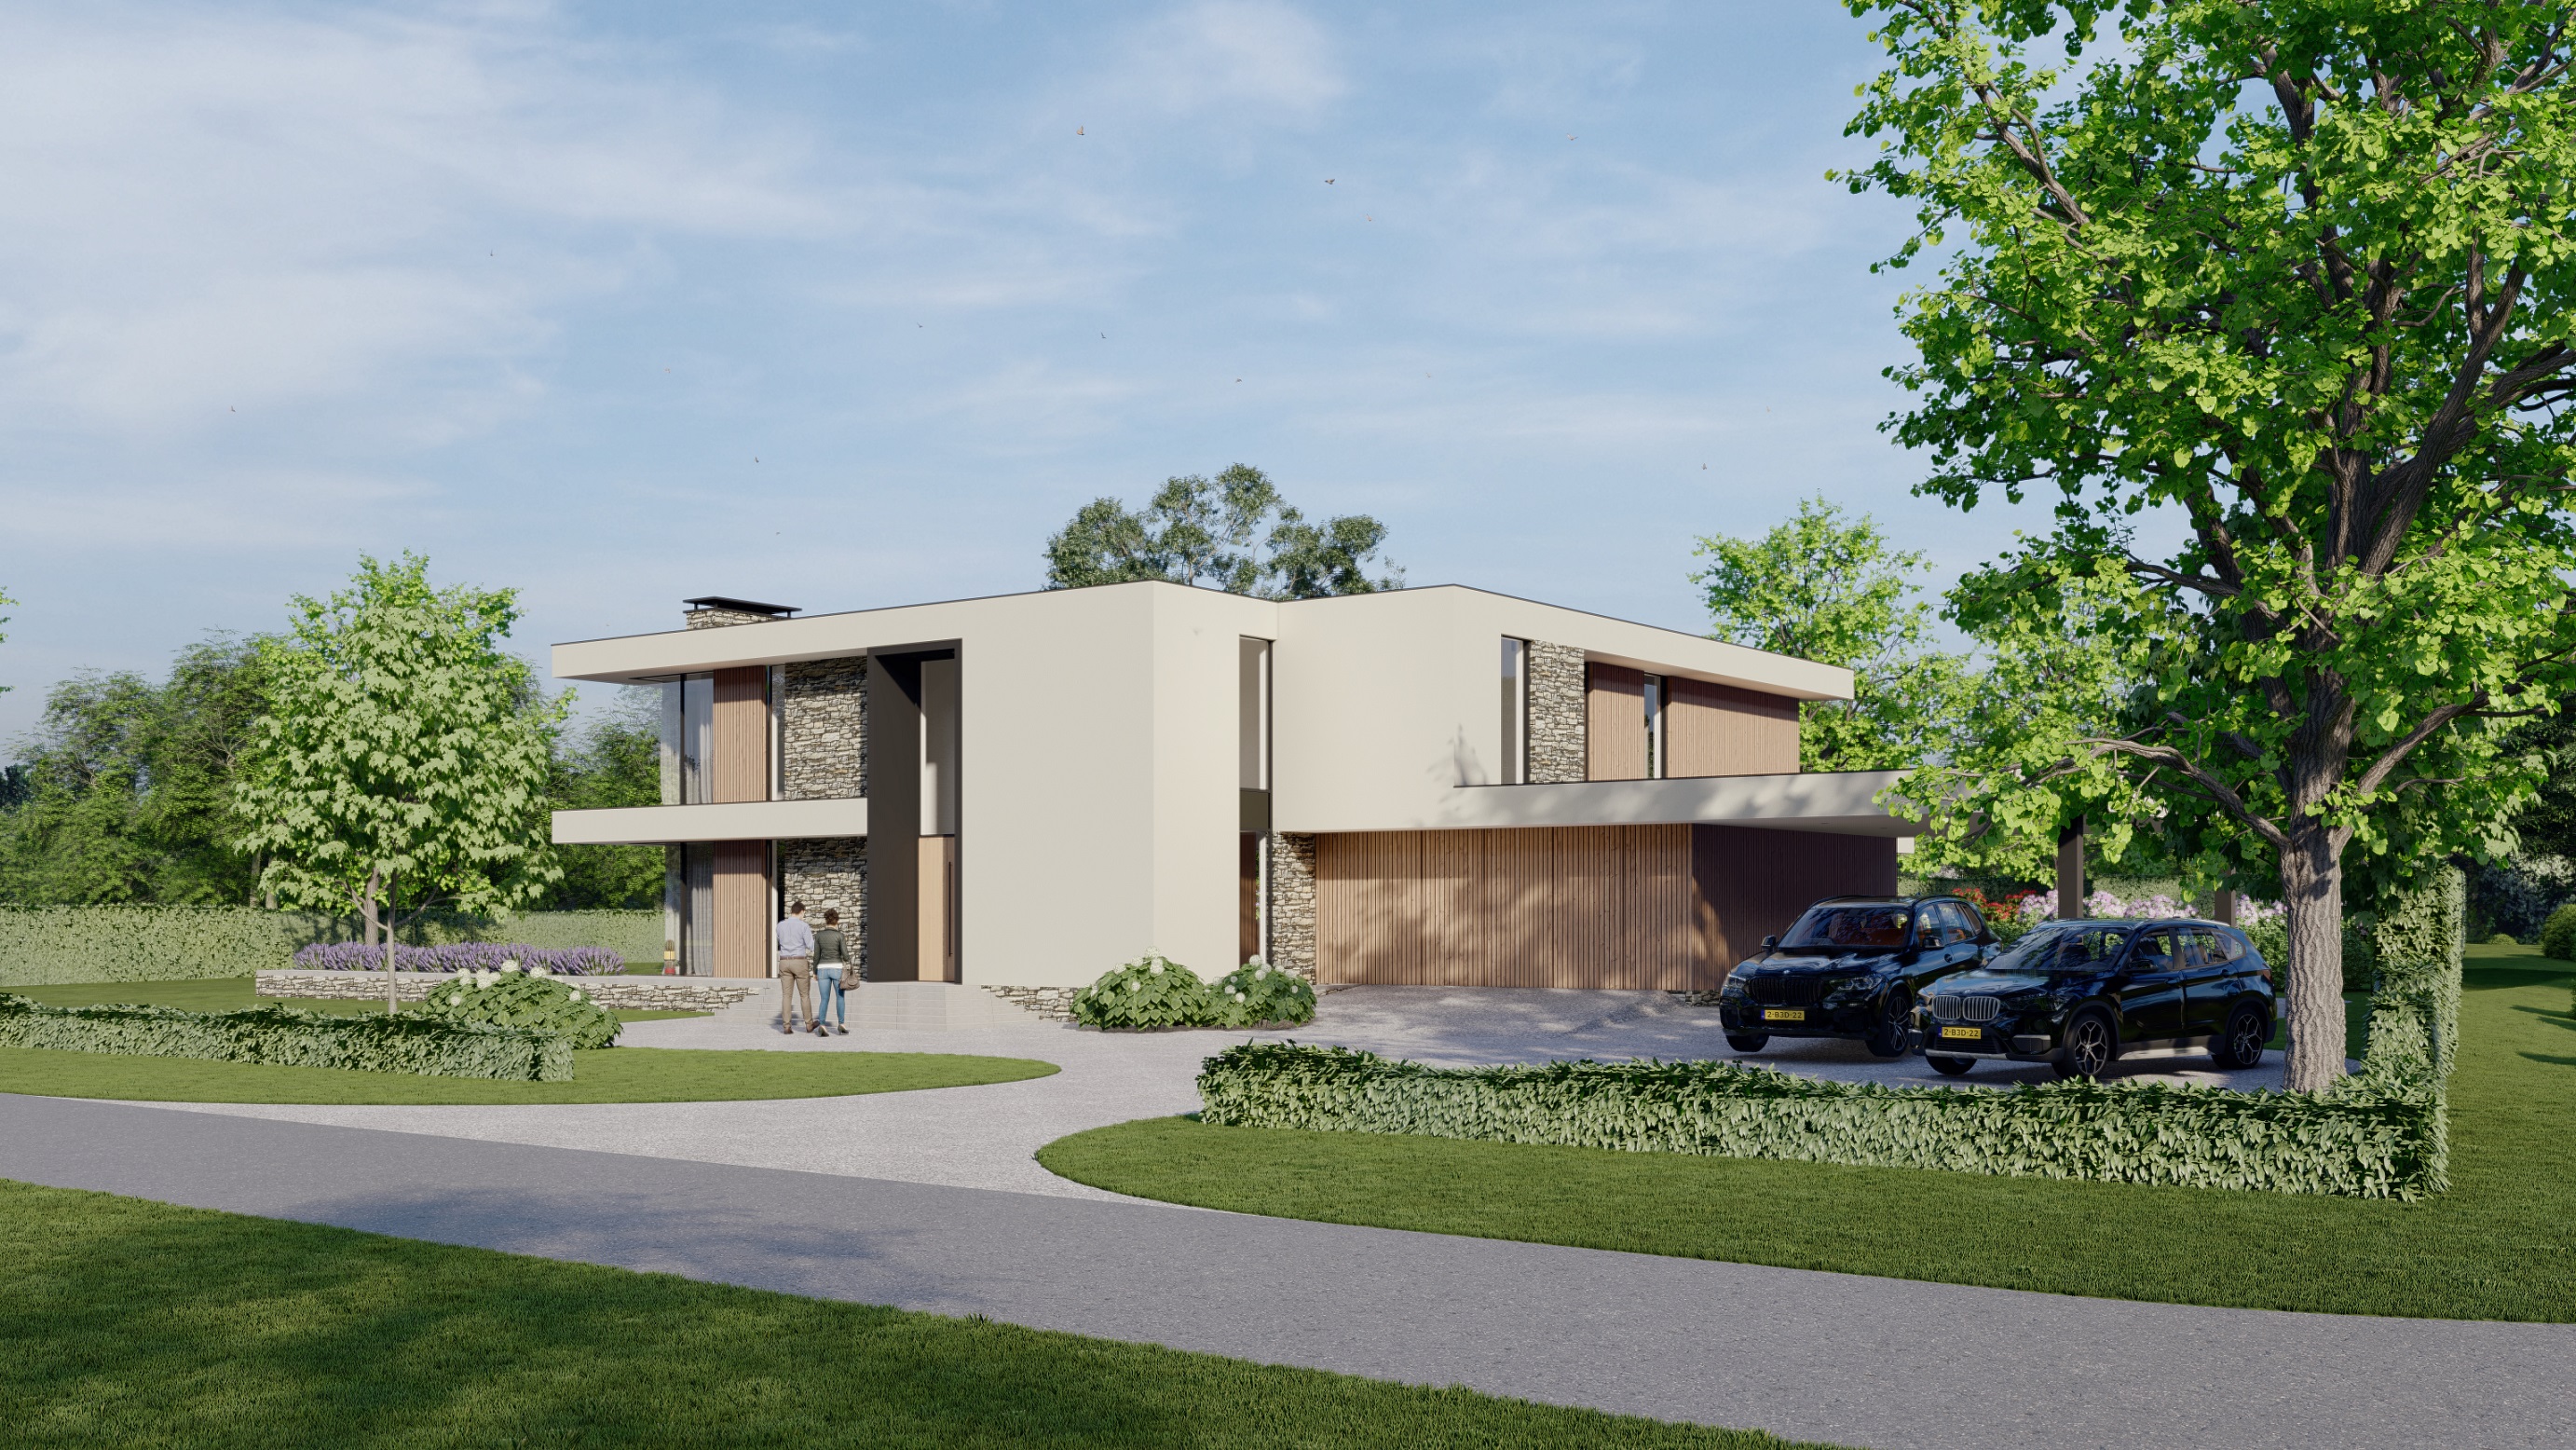 Foto: Villa bouwen   Strakke moderne villa nabij Arnhem   Lichtenberg Exclusieve Villabouw  1 